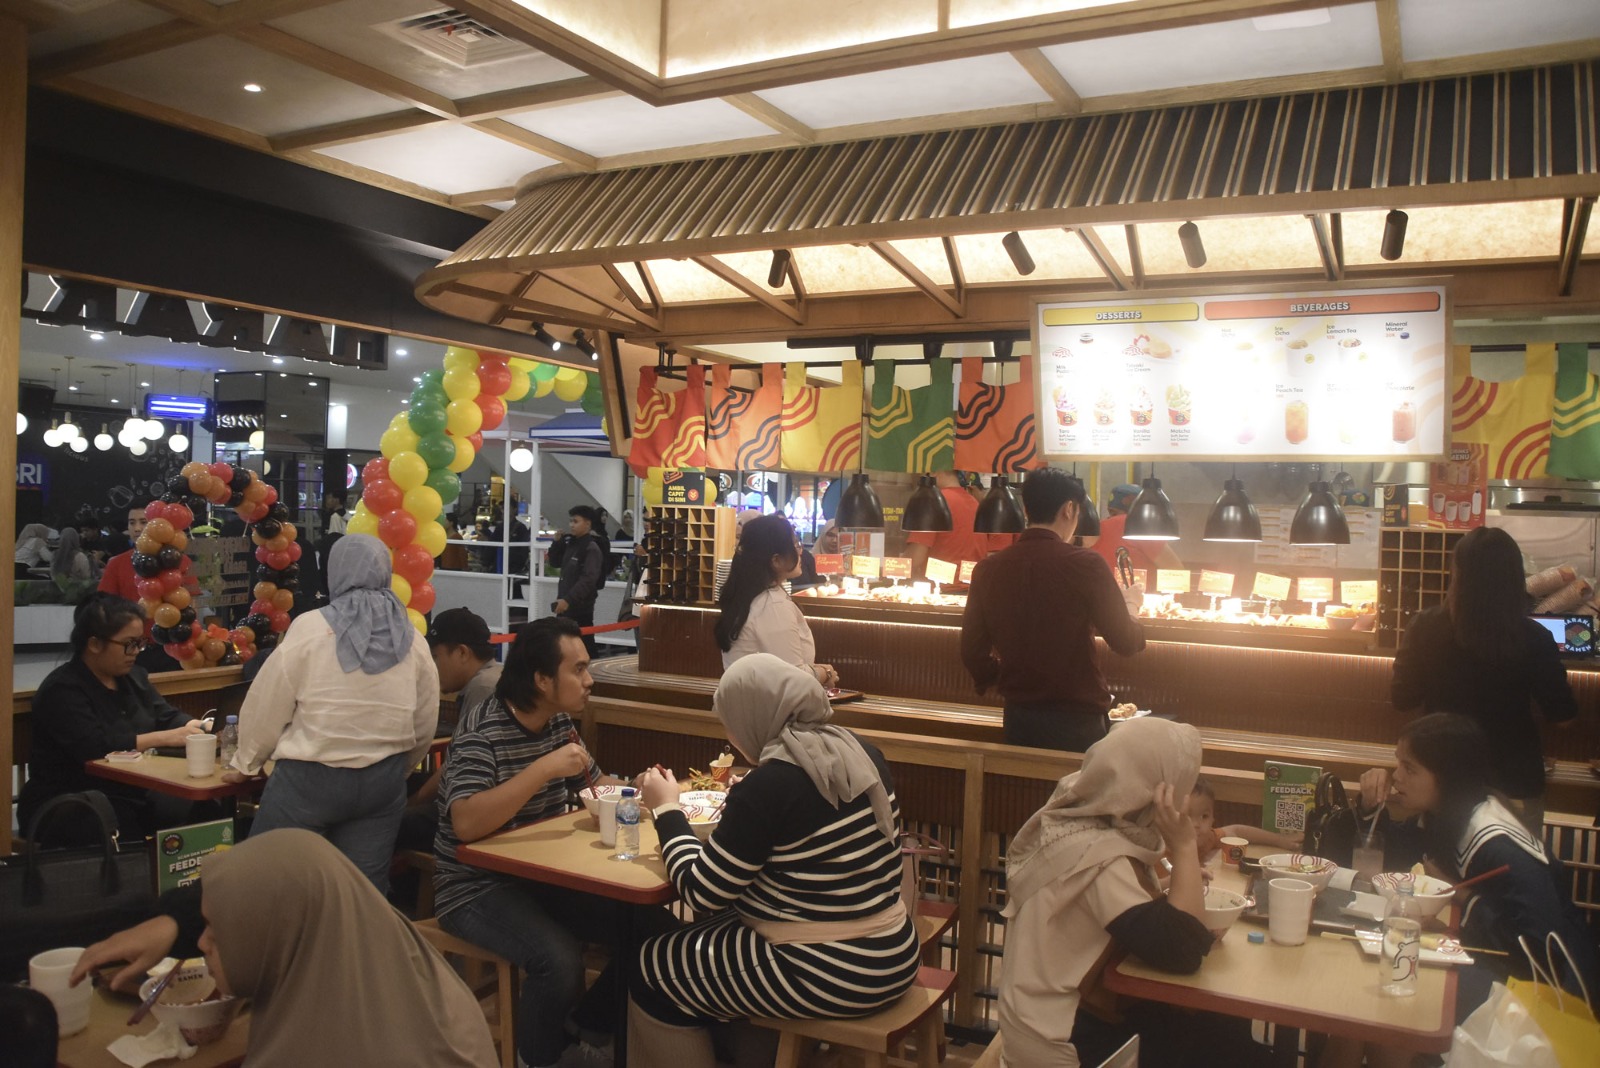 Haraku Ramen Hadir di Palembang, Ramen Halal dengan Kuah Gurih yang Kental, Ada Promo Buy 1 Get 1